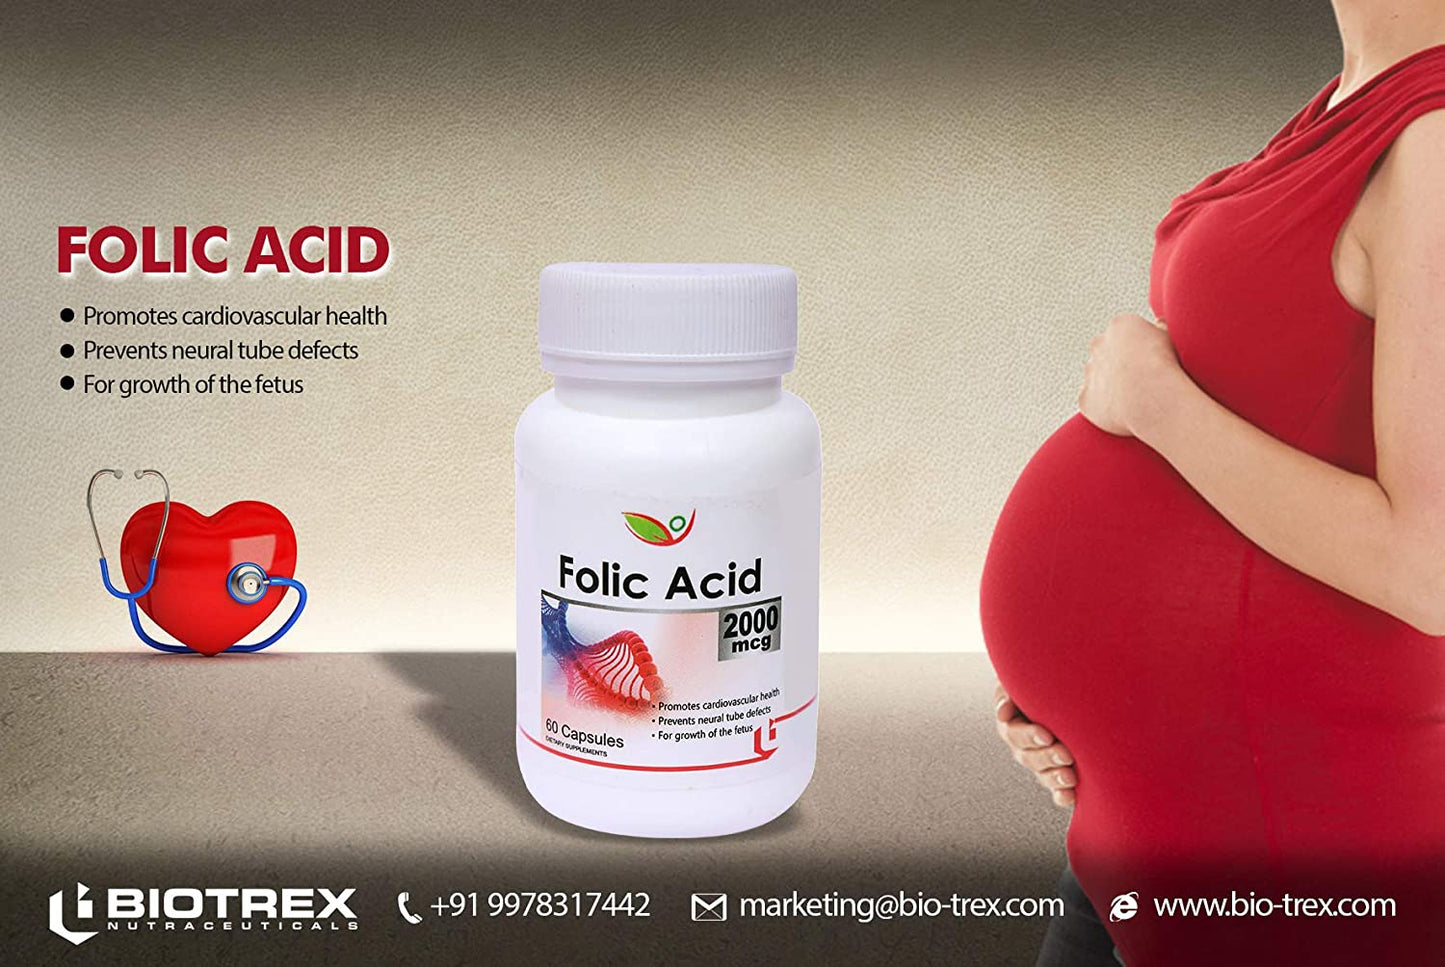 Biotrex Folic Acid 2000mcg - 60 Capsules